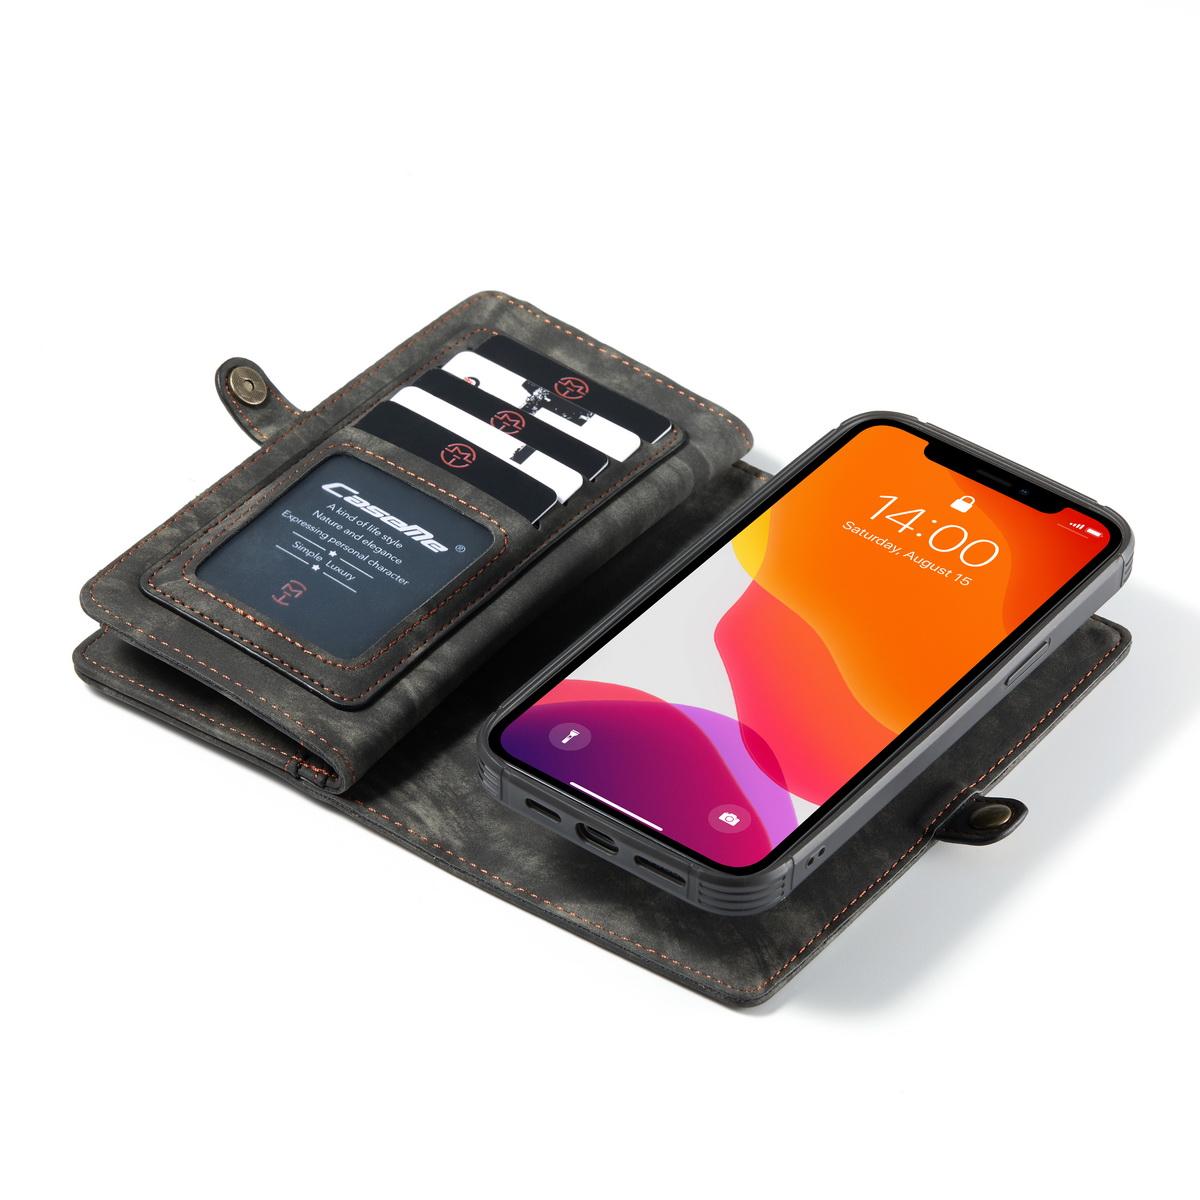 Multi-slot Plånboksfodral iPhone 12 Mini grå